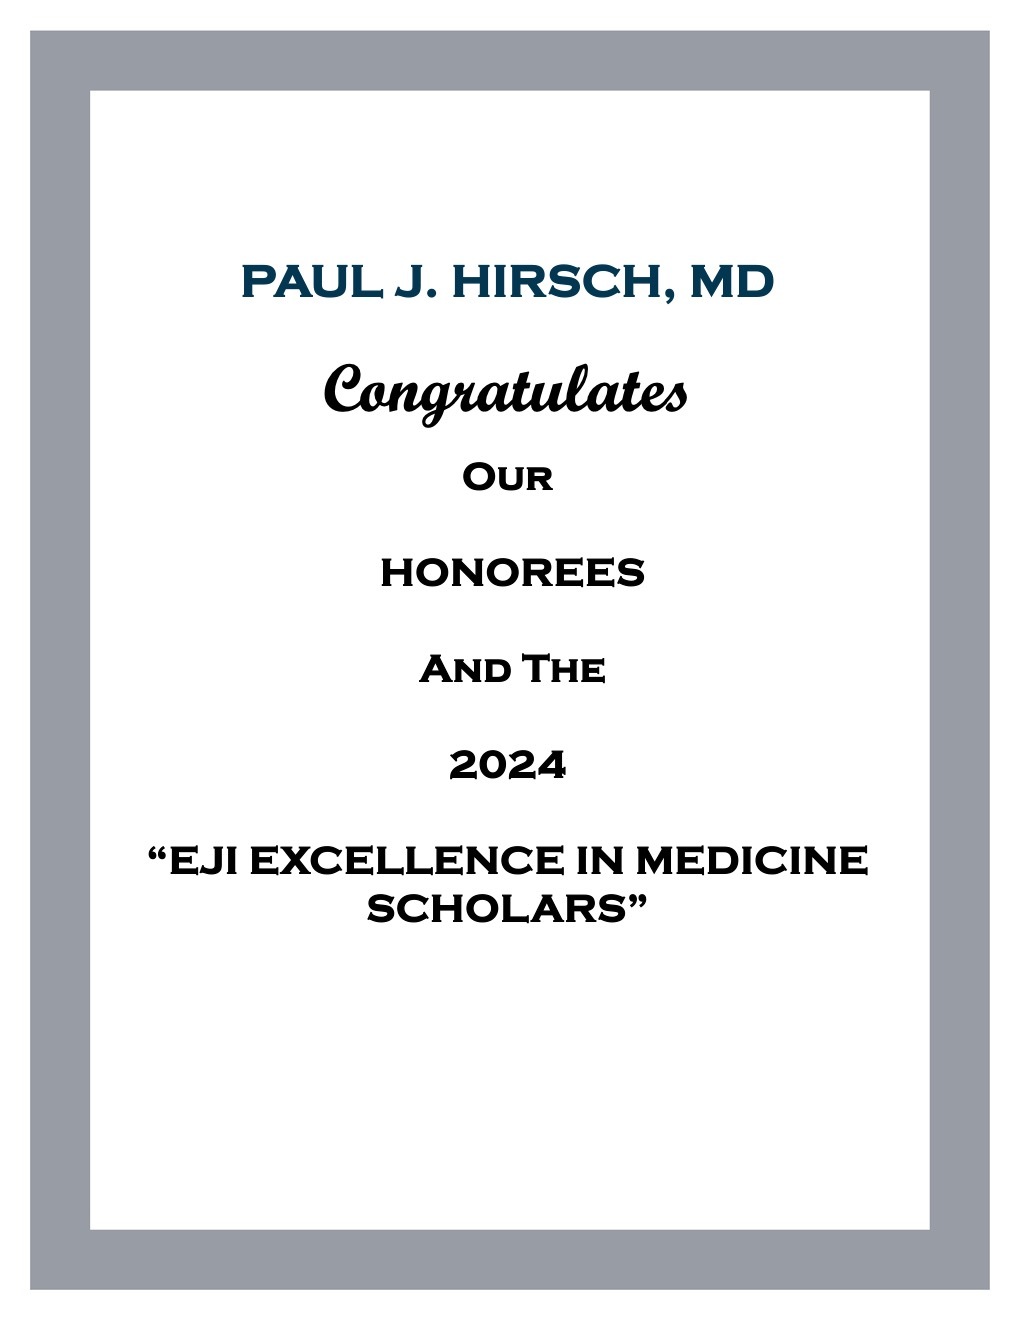 Paul J. Hirsch, MD advertisement